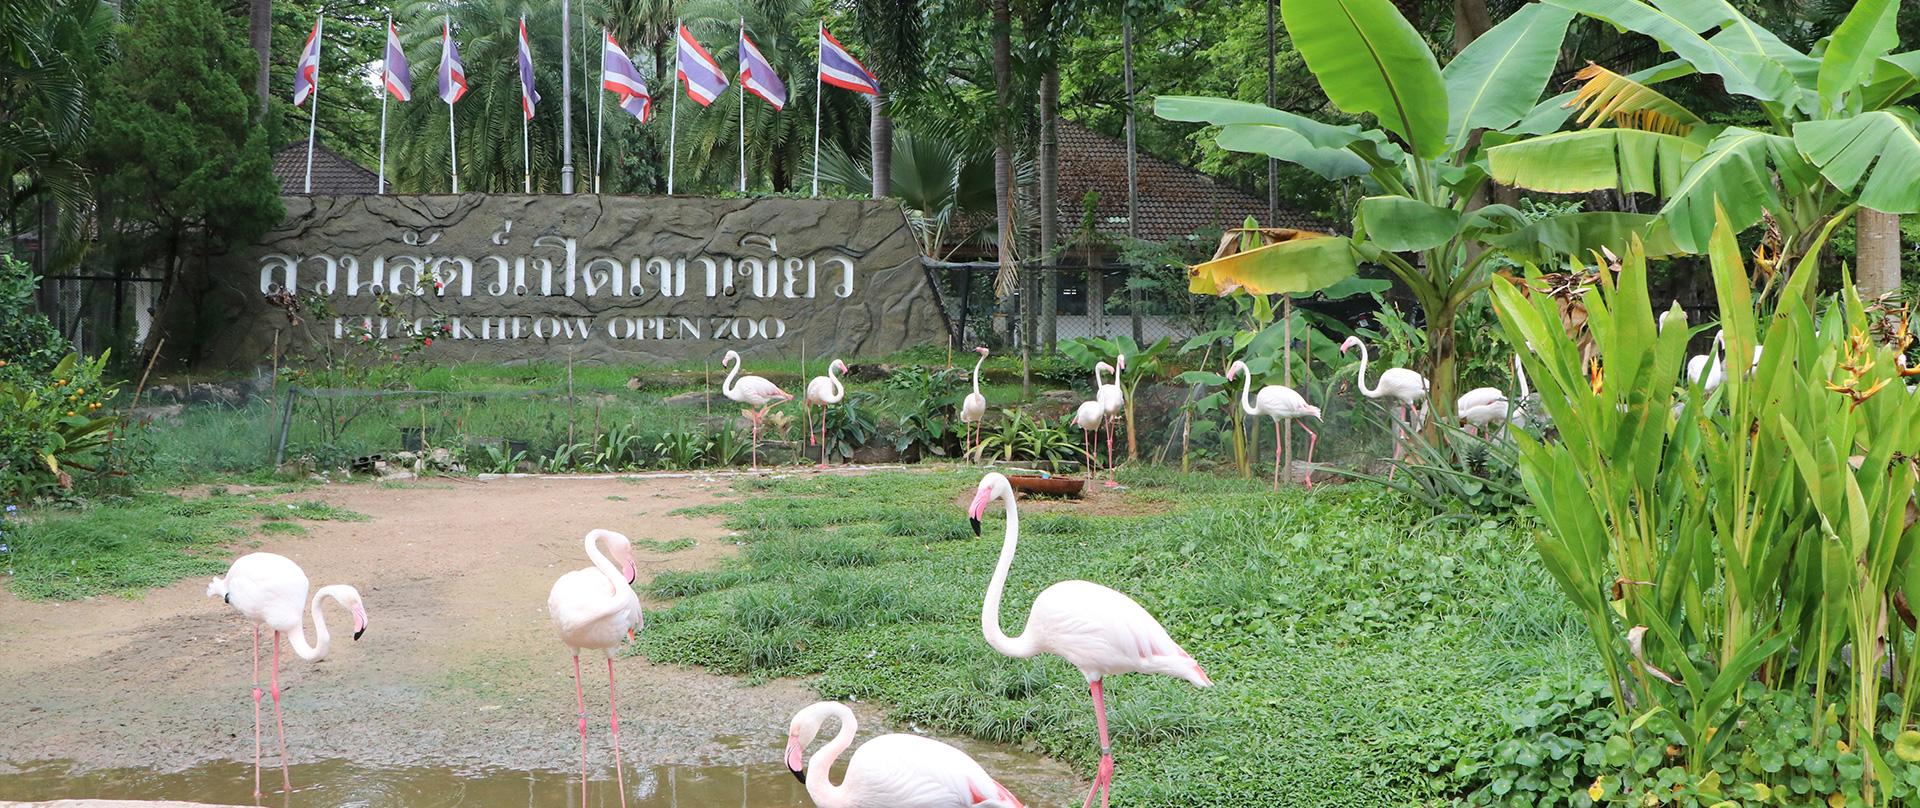 Открытый зоопарк Кхао Кхео в Паттайе (Khao Kheow Zoo)